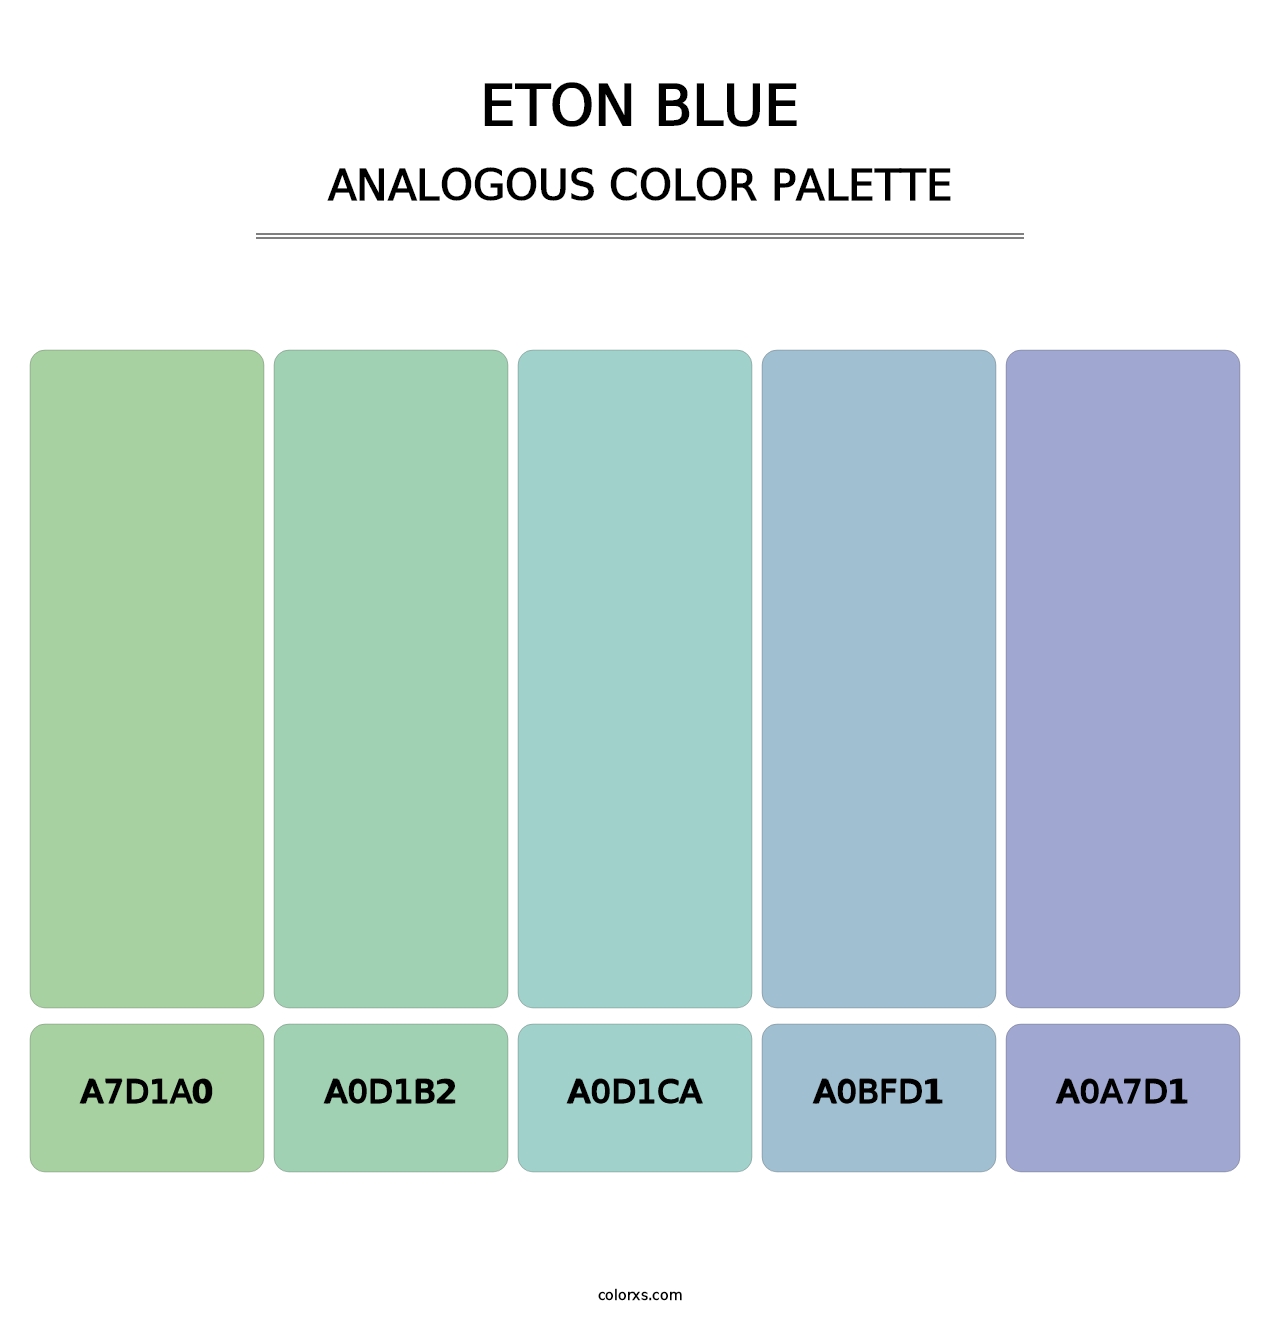 Eton blue - Analogous Color Palette